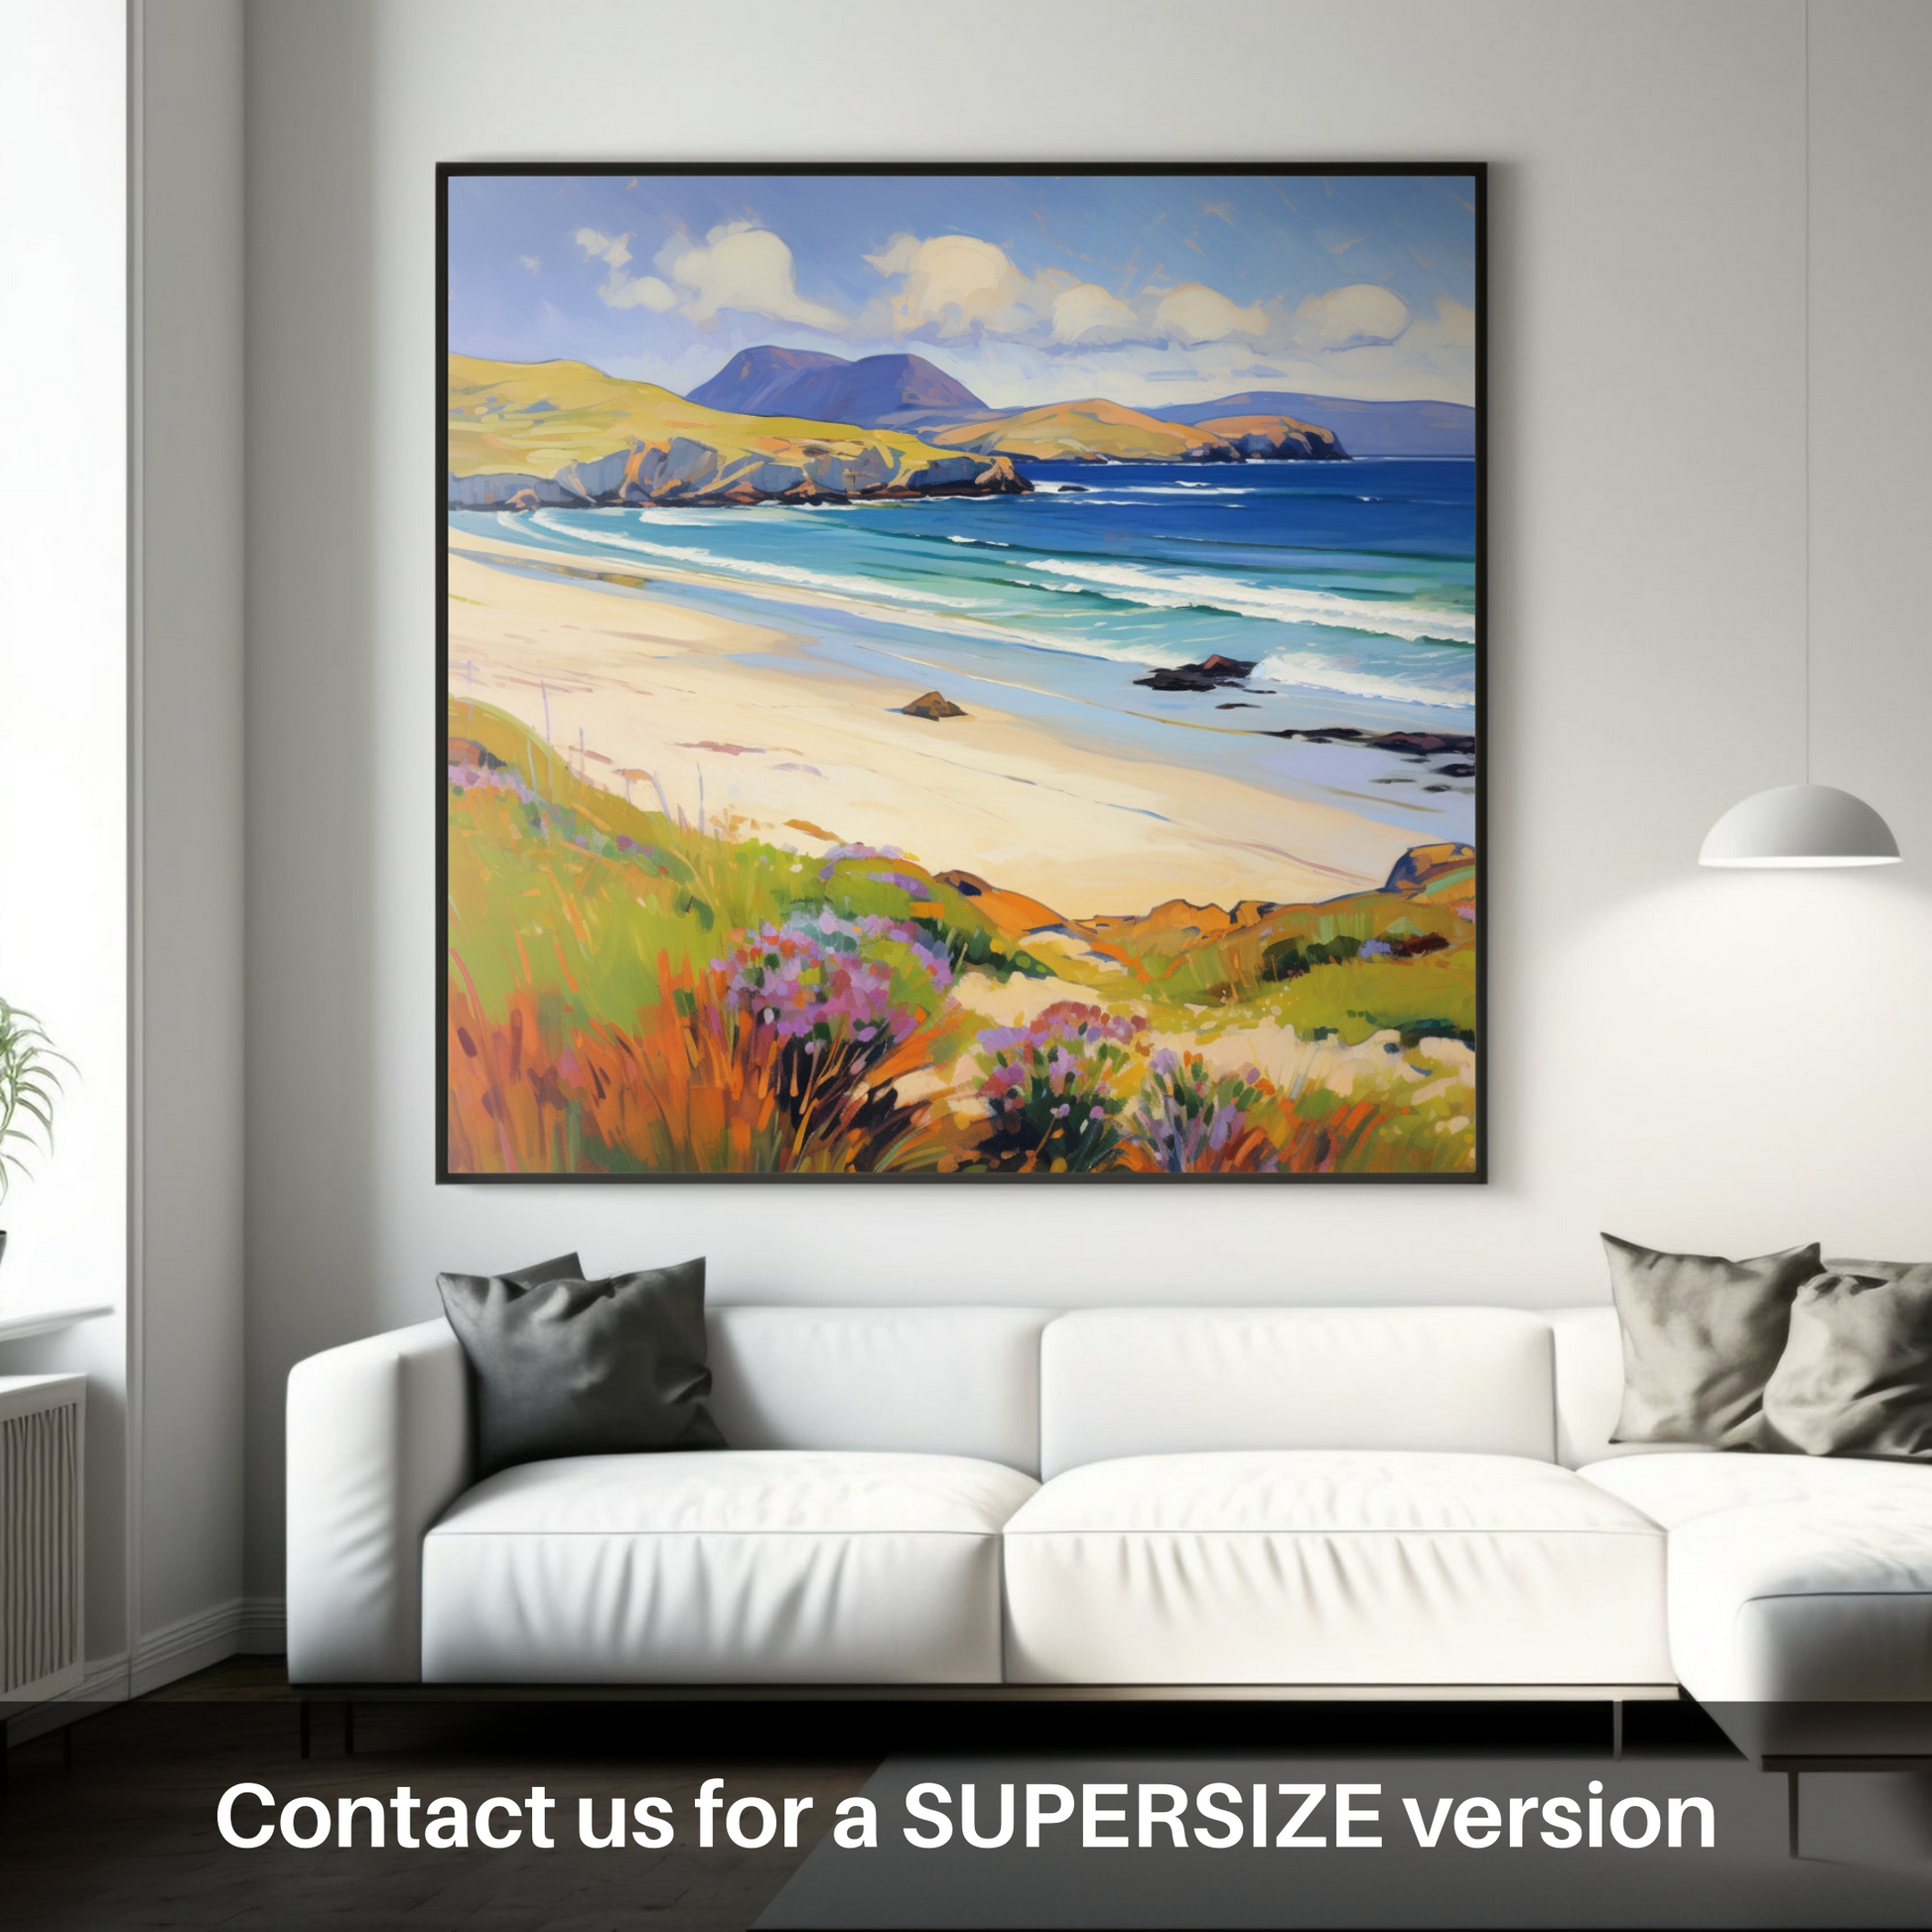 Huge supersize print of Sandwood Bay, Sutherland in summer